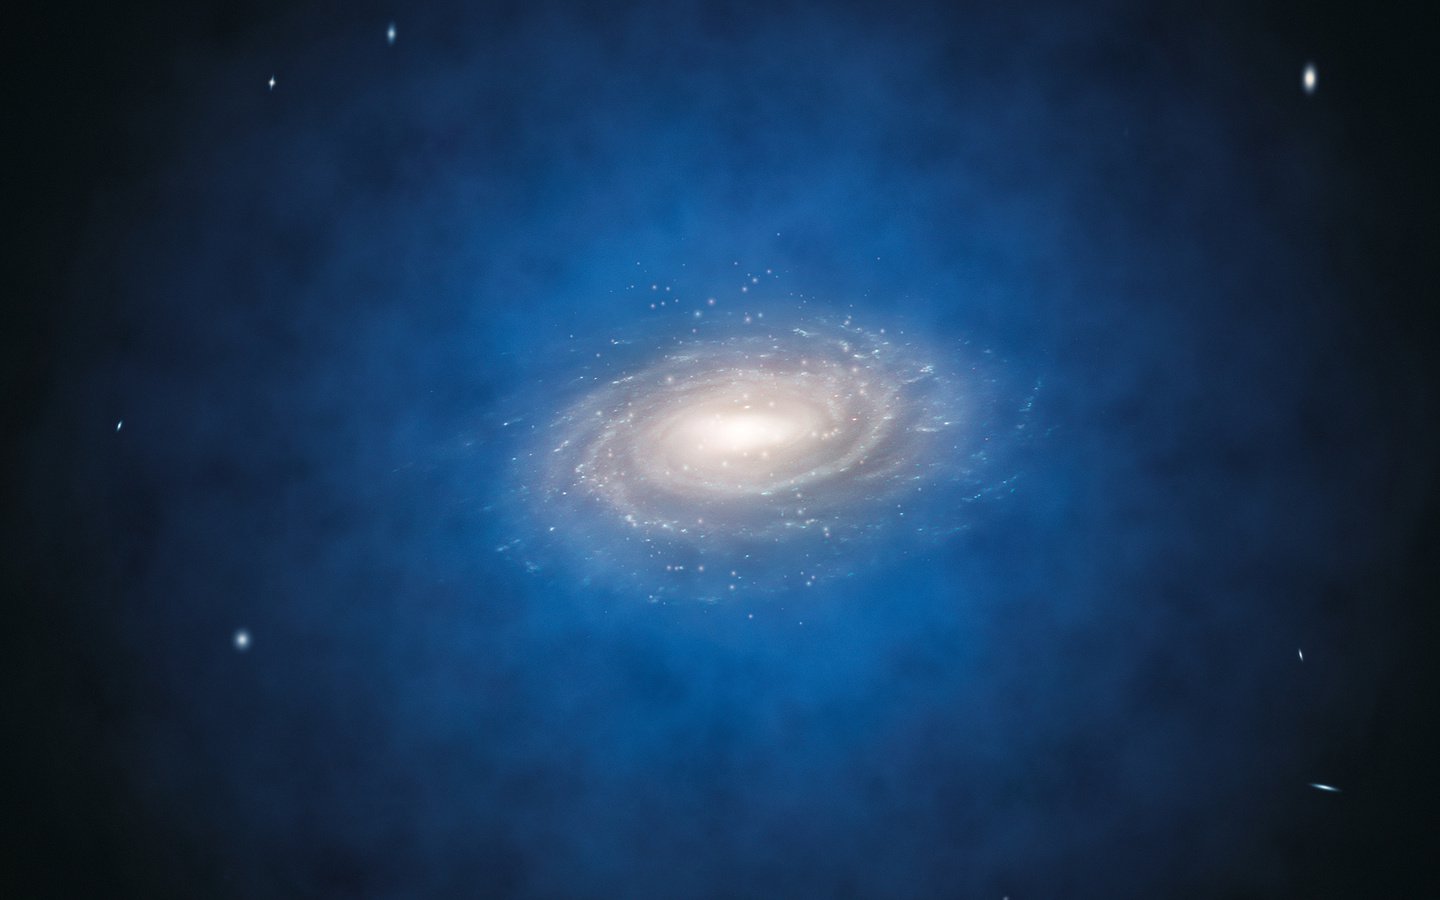 वैज्ञानिकों ने पाया है, जहां सितारों में हेलो के मिल्की वे